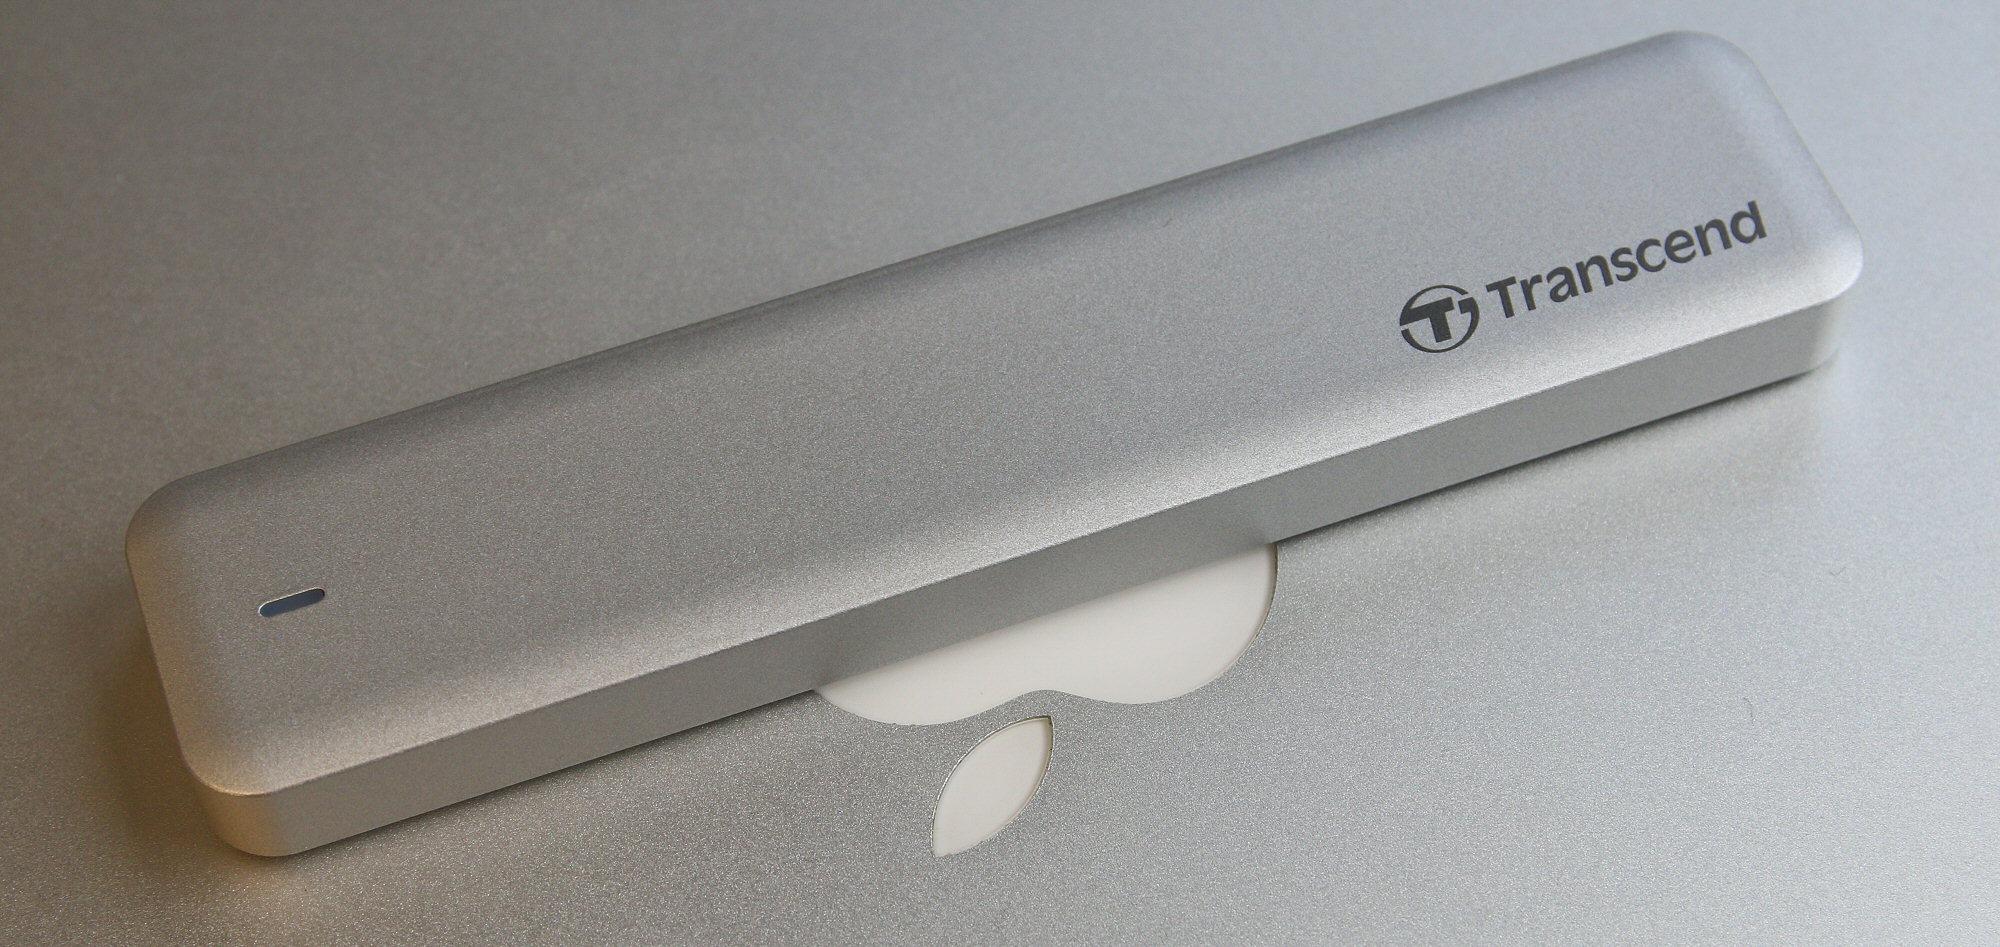 Med eksternt kabinett i matchende metall er det klart at JetDrive er skapt for Mac.Foto: Vegar Jansen, Hardware.no